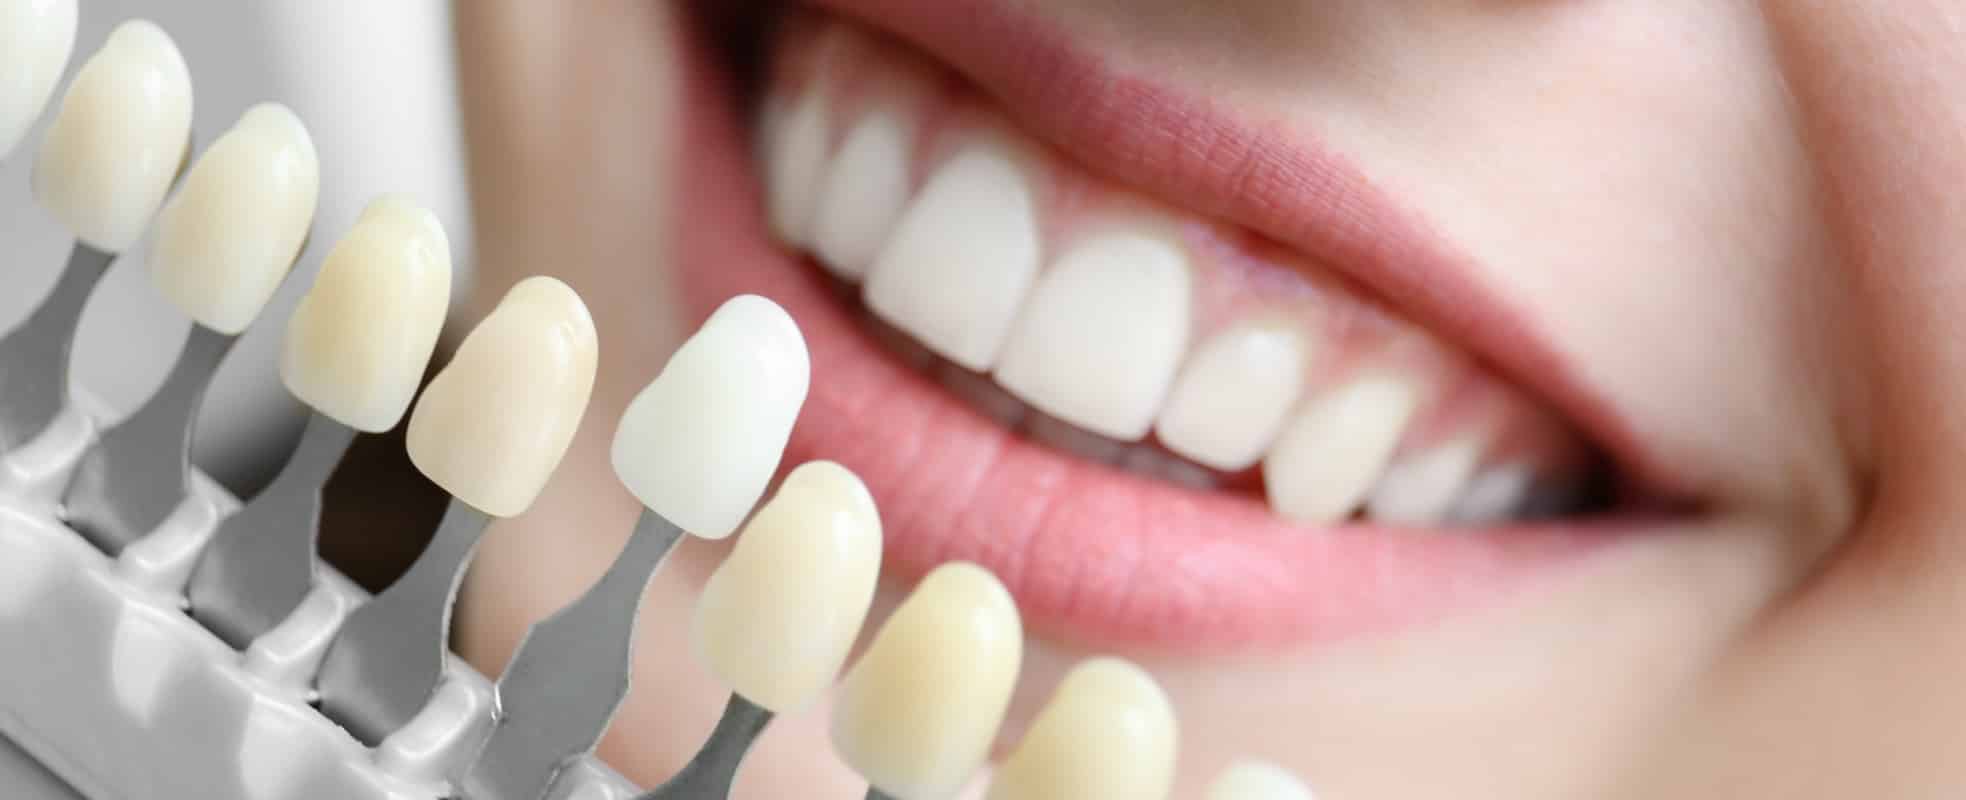 Le blanchiment dentaire est-il adapté à tout le monde ? | Dr Elhyani | Paris